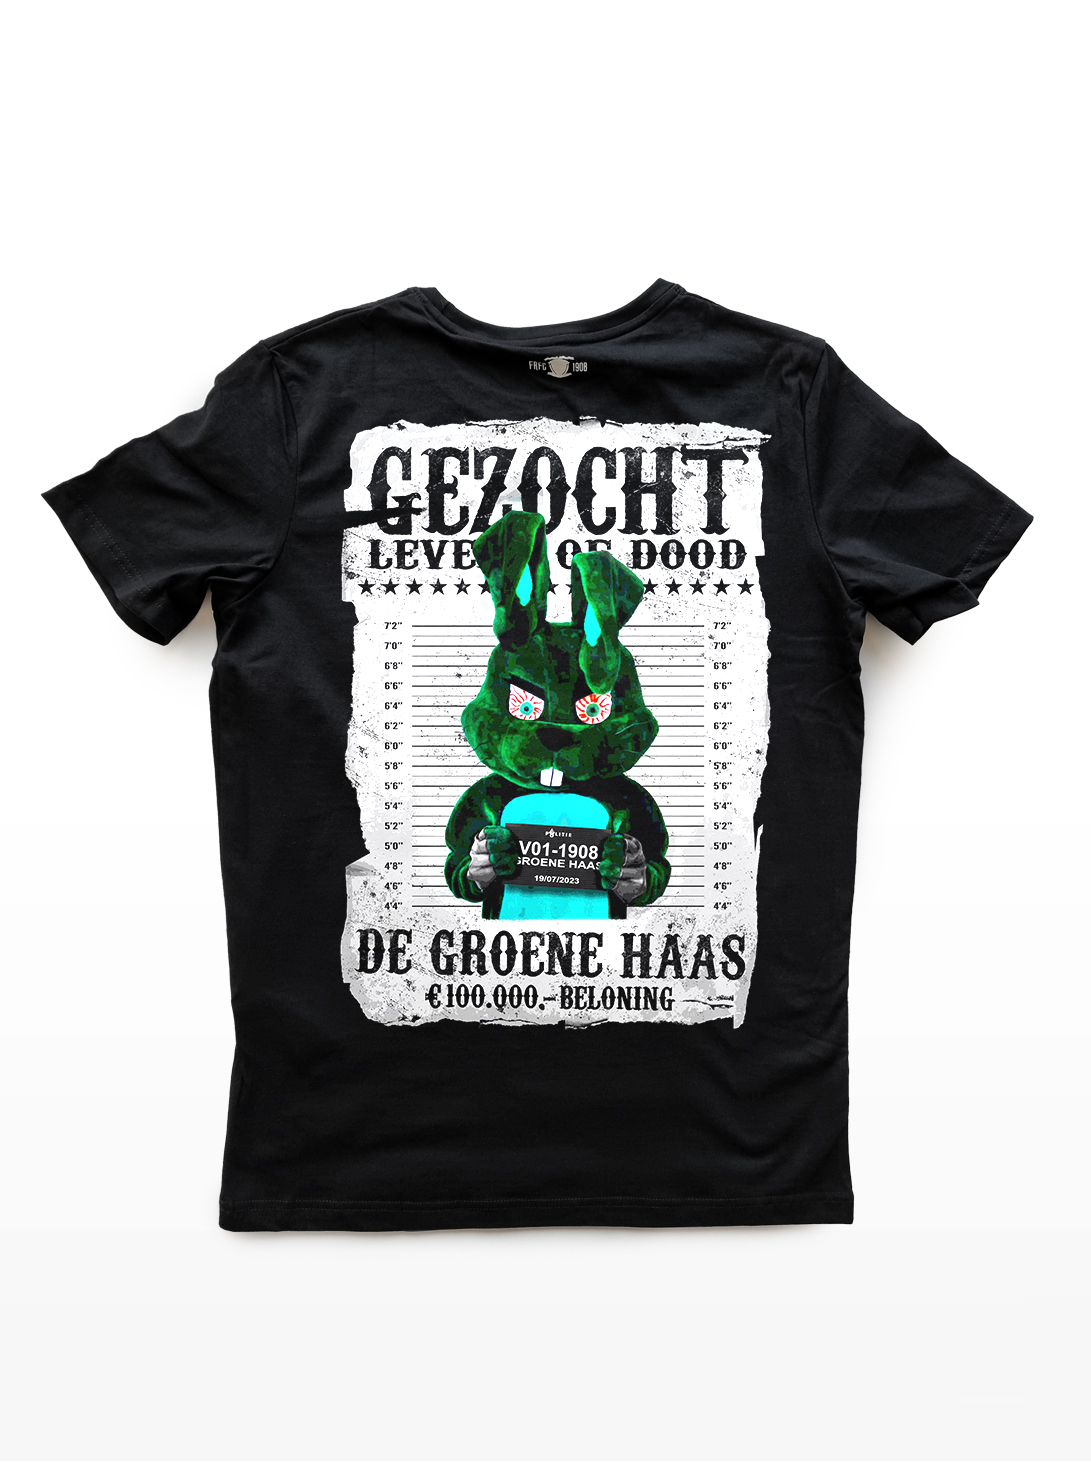 Groene Haas Gezocht - T-shirt